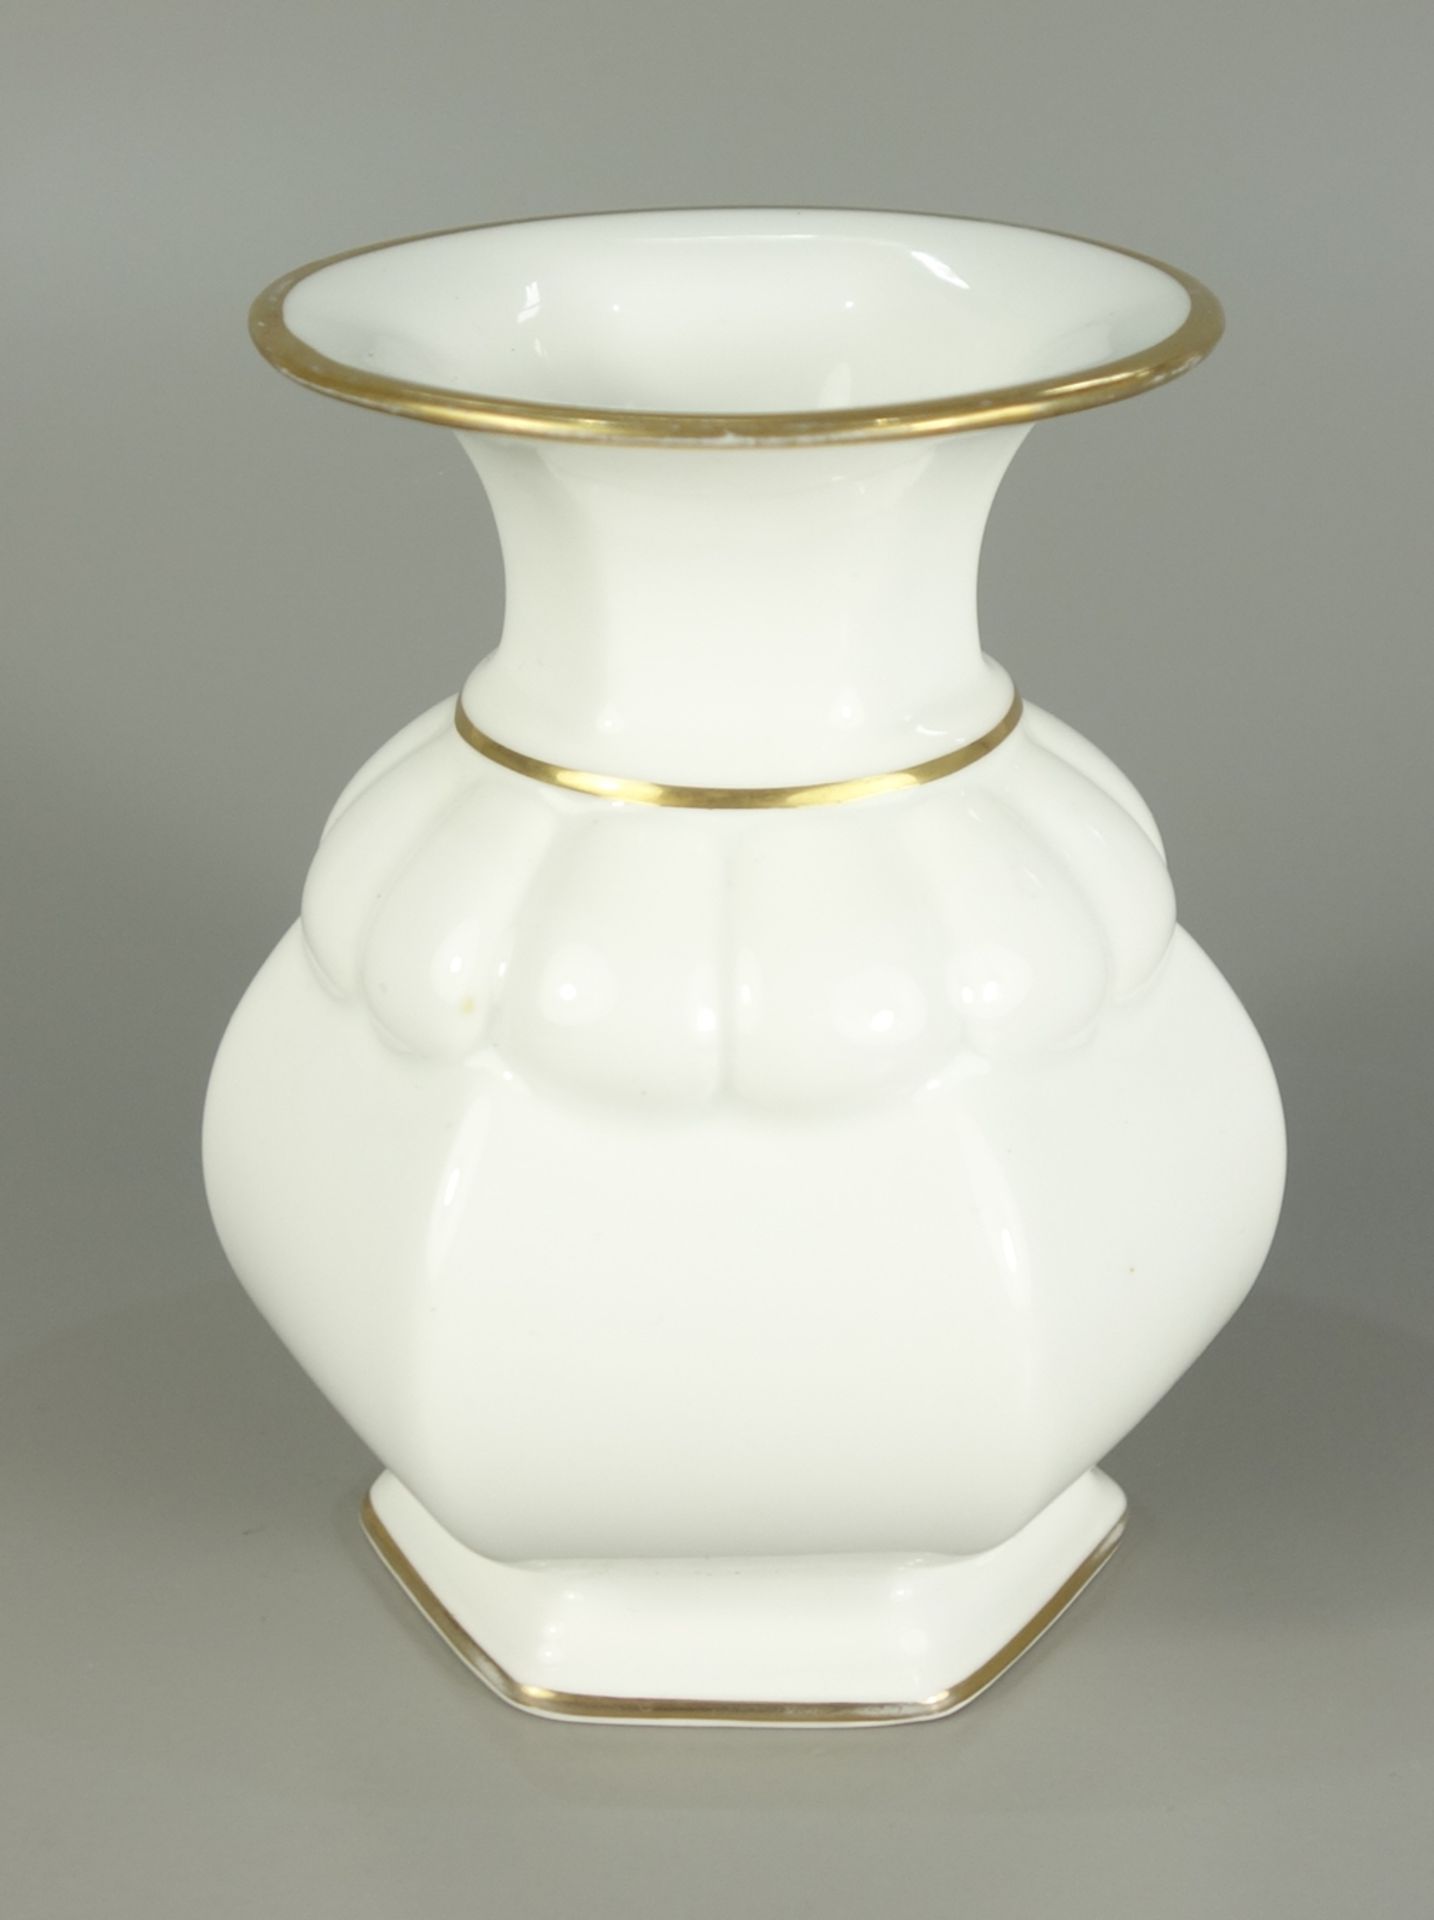 Vase, Rosenthal, 1926, Modell von Ph.Rosenthal, Modell-Nr. 255-1, polygonaler Korpus auf